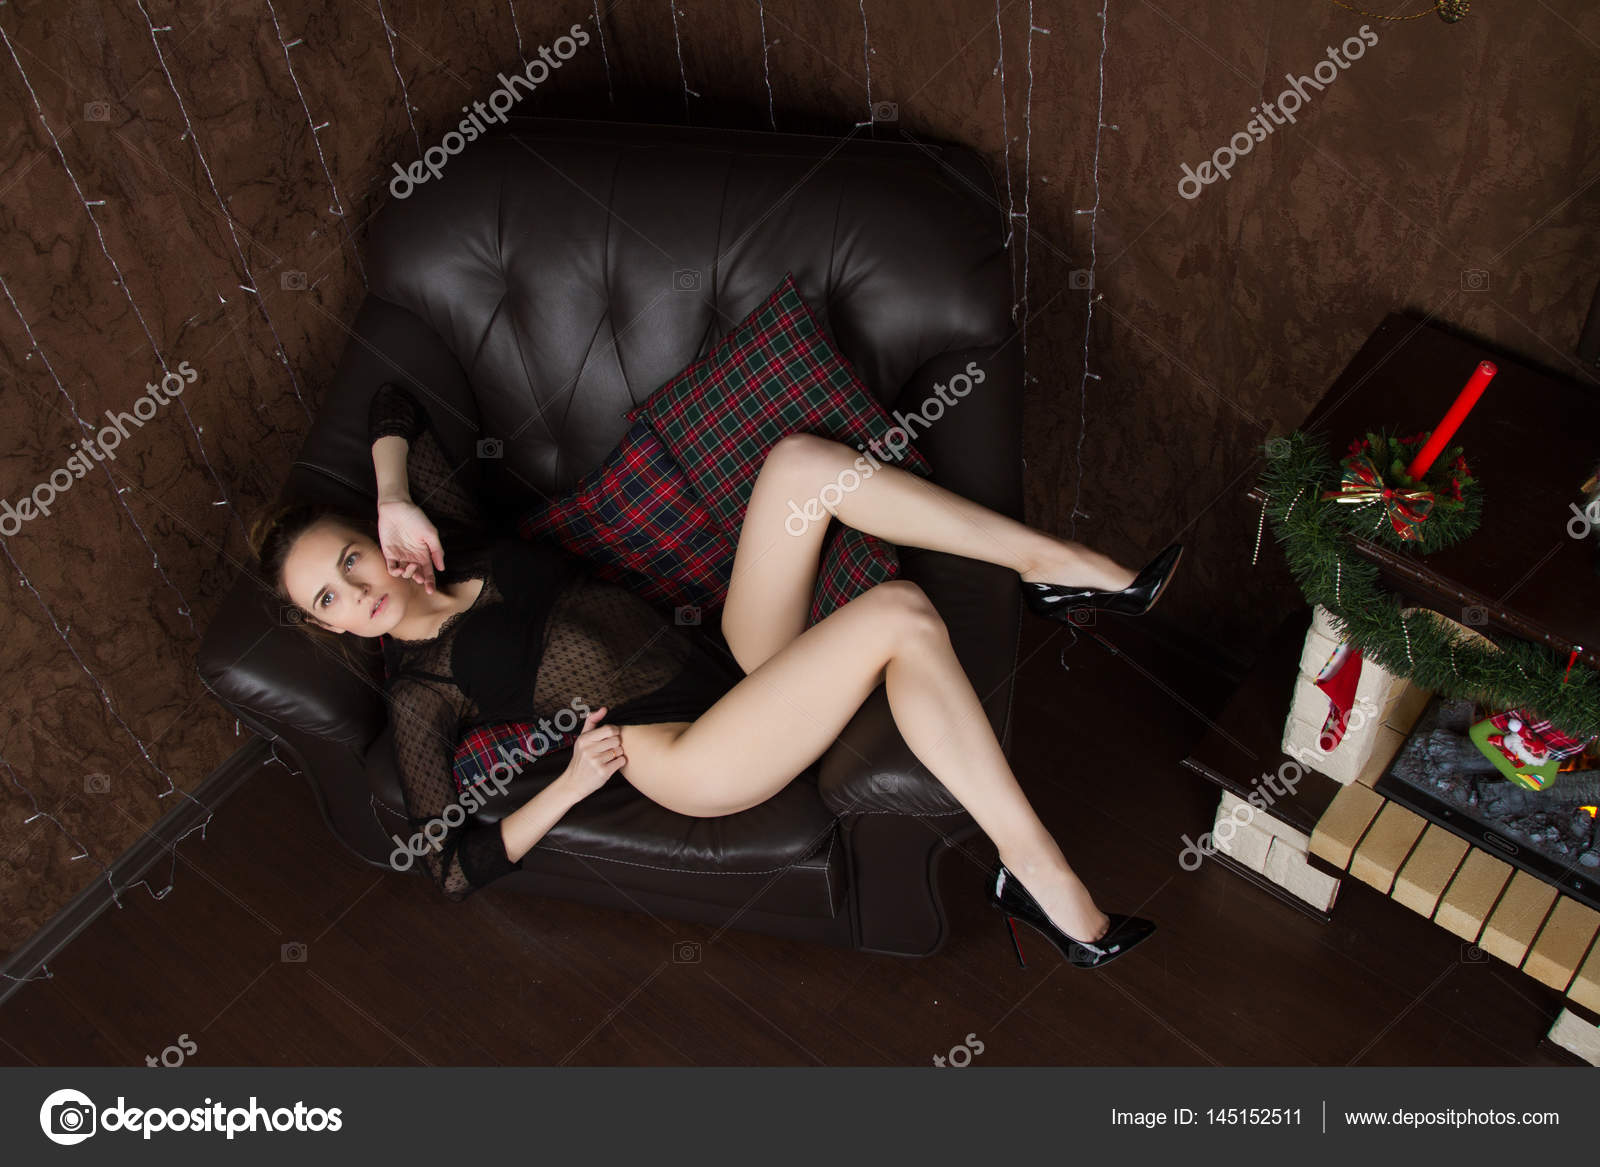 Девушка с волосатым лобком позирует в кожаном кресле